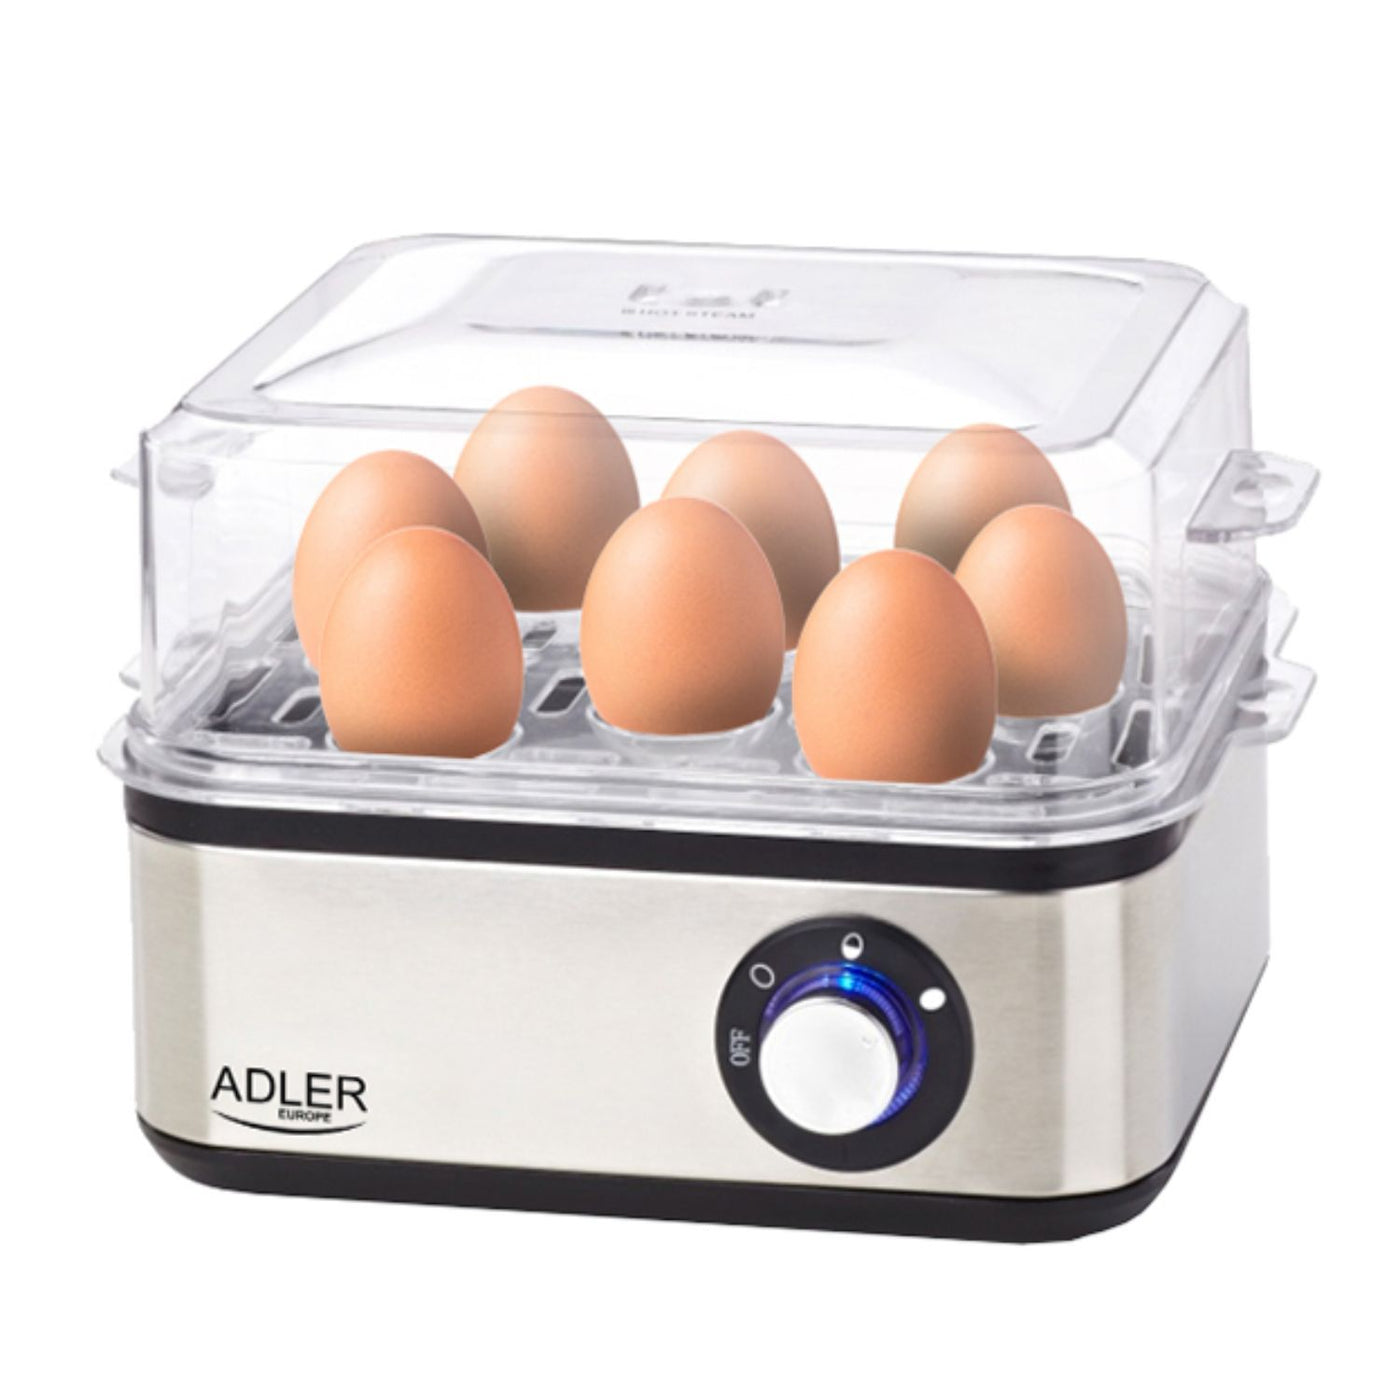 Cuece huevos eléctrico para 8 huevos, acero inoxidable, ajuste de cocc –  Euroelectronics ES